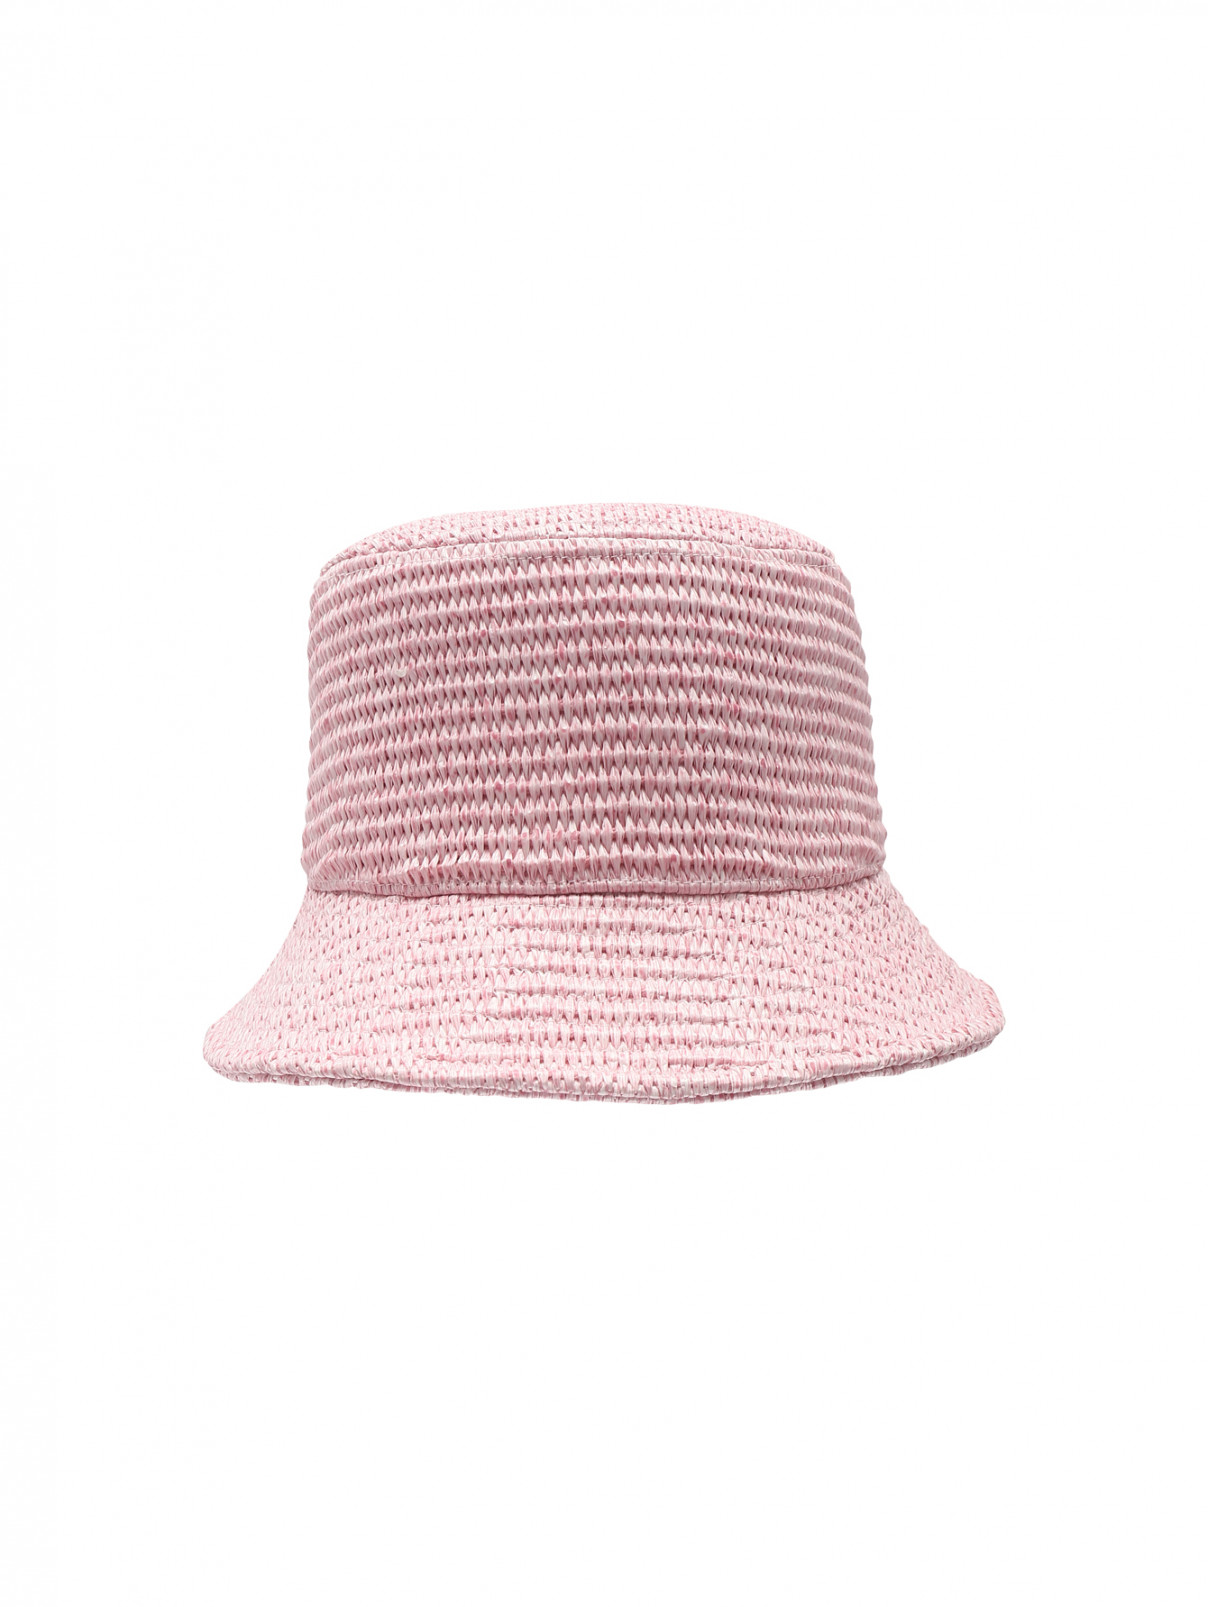 Однотонная плетеная шляпа Weekend Max Mara  –  Общий вид  – Цвет:  Розовый